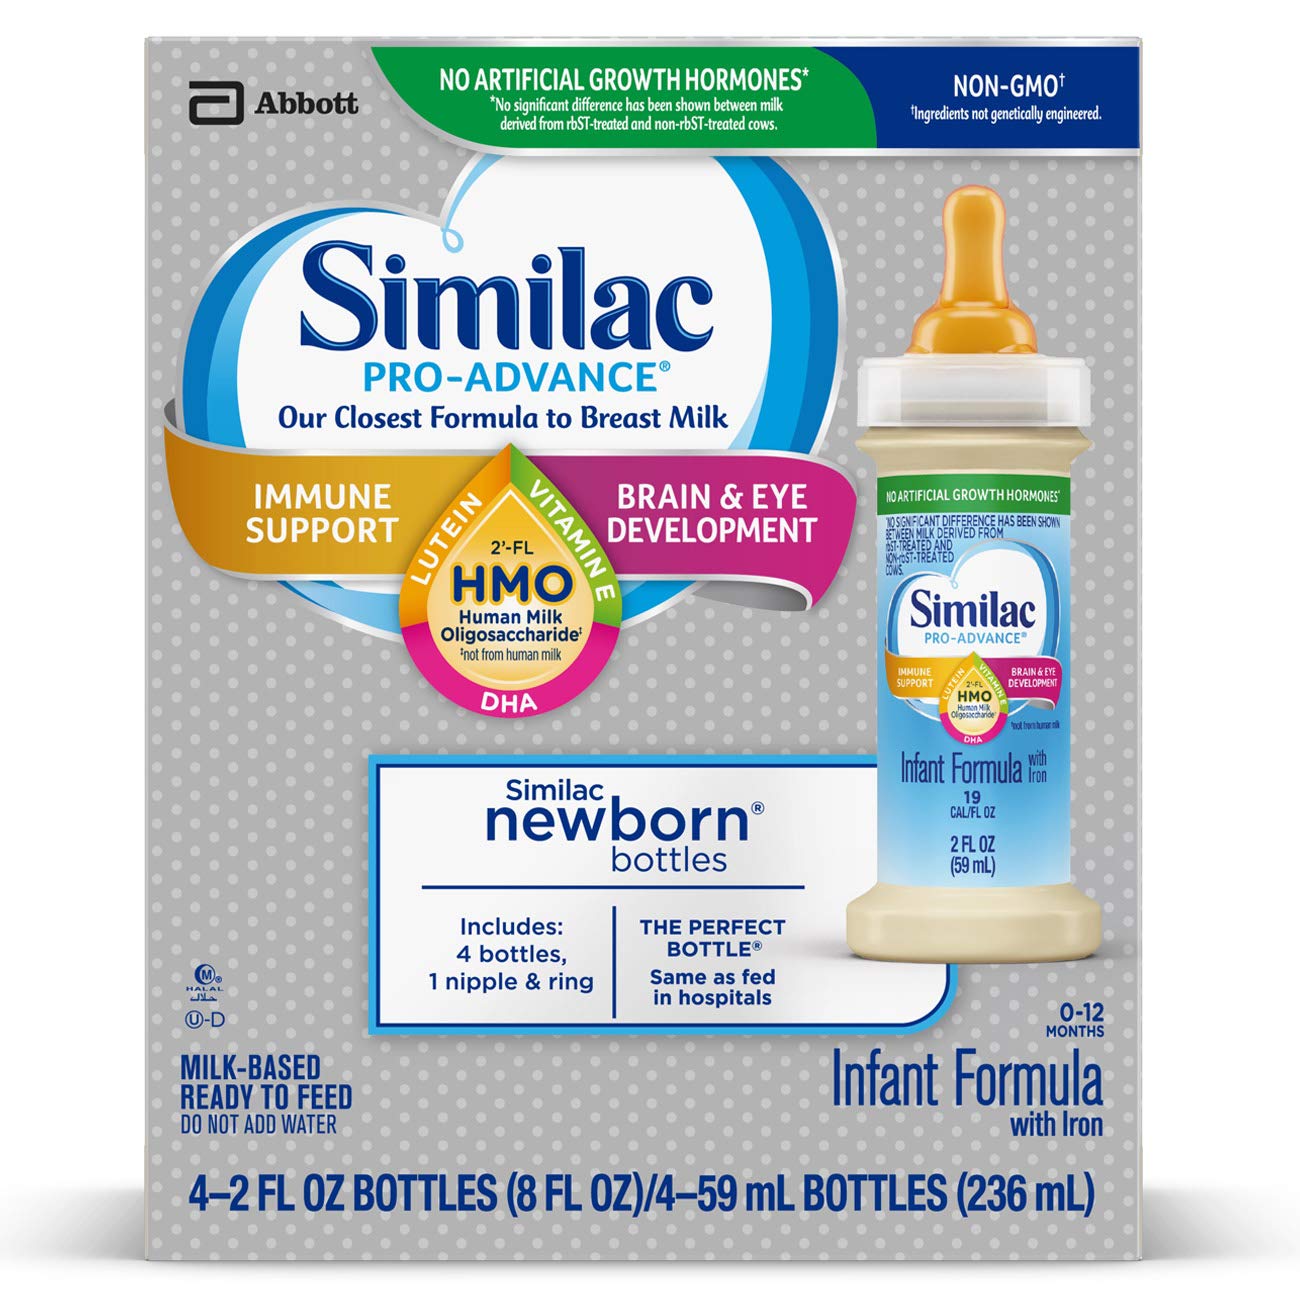 Similac Pro-Advance Infant Formula 6'lı Paket-  59 ml -4